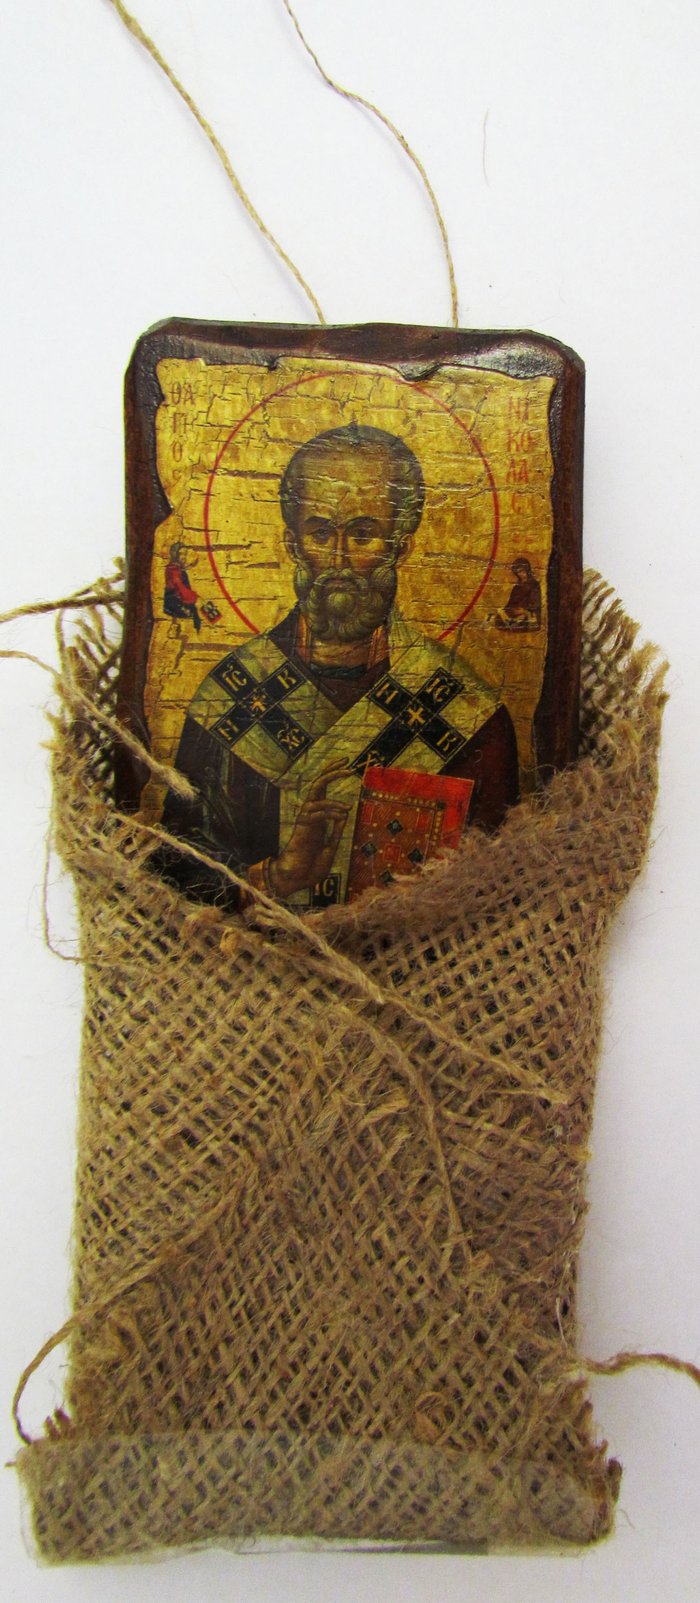 Икона Николай Чудотворец святитель, полиграфия 7х10 см, на дереве, текстильная упаковка